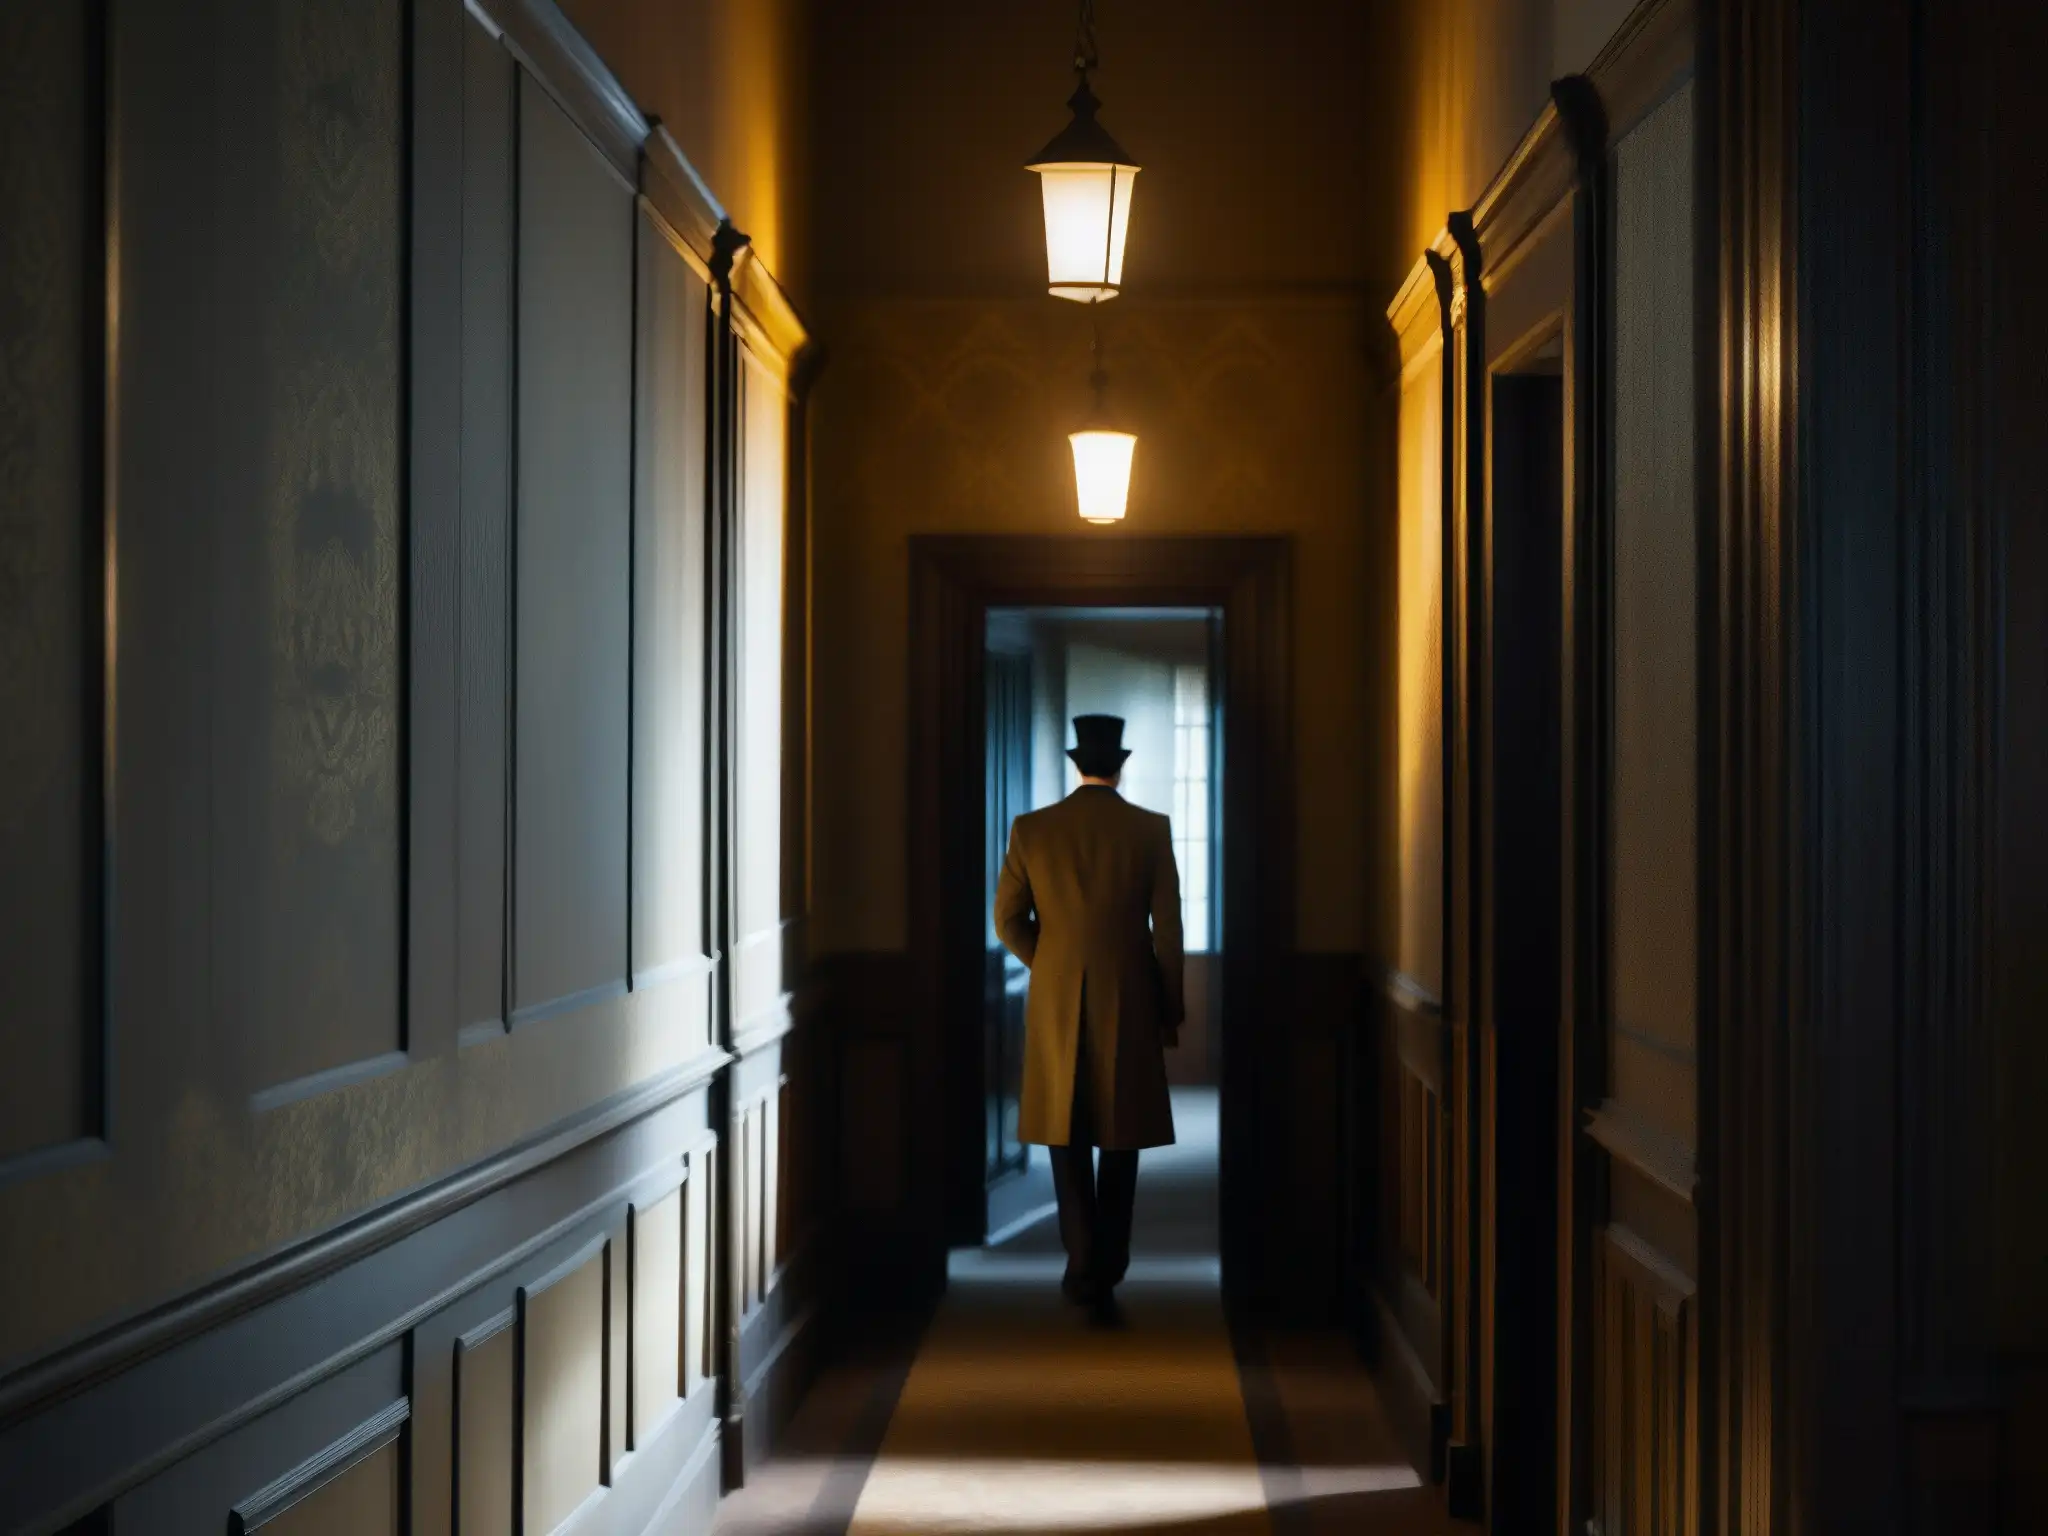 Hallway sombrío en un antiguo palacio gubernamental, revelando una figura misteriosa al final del pasillo